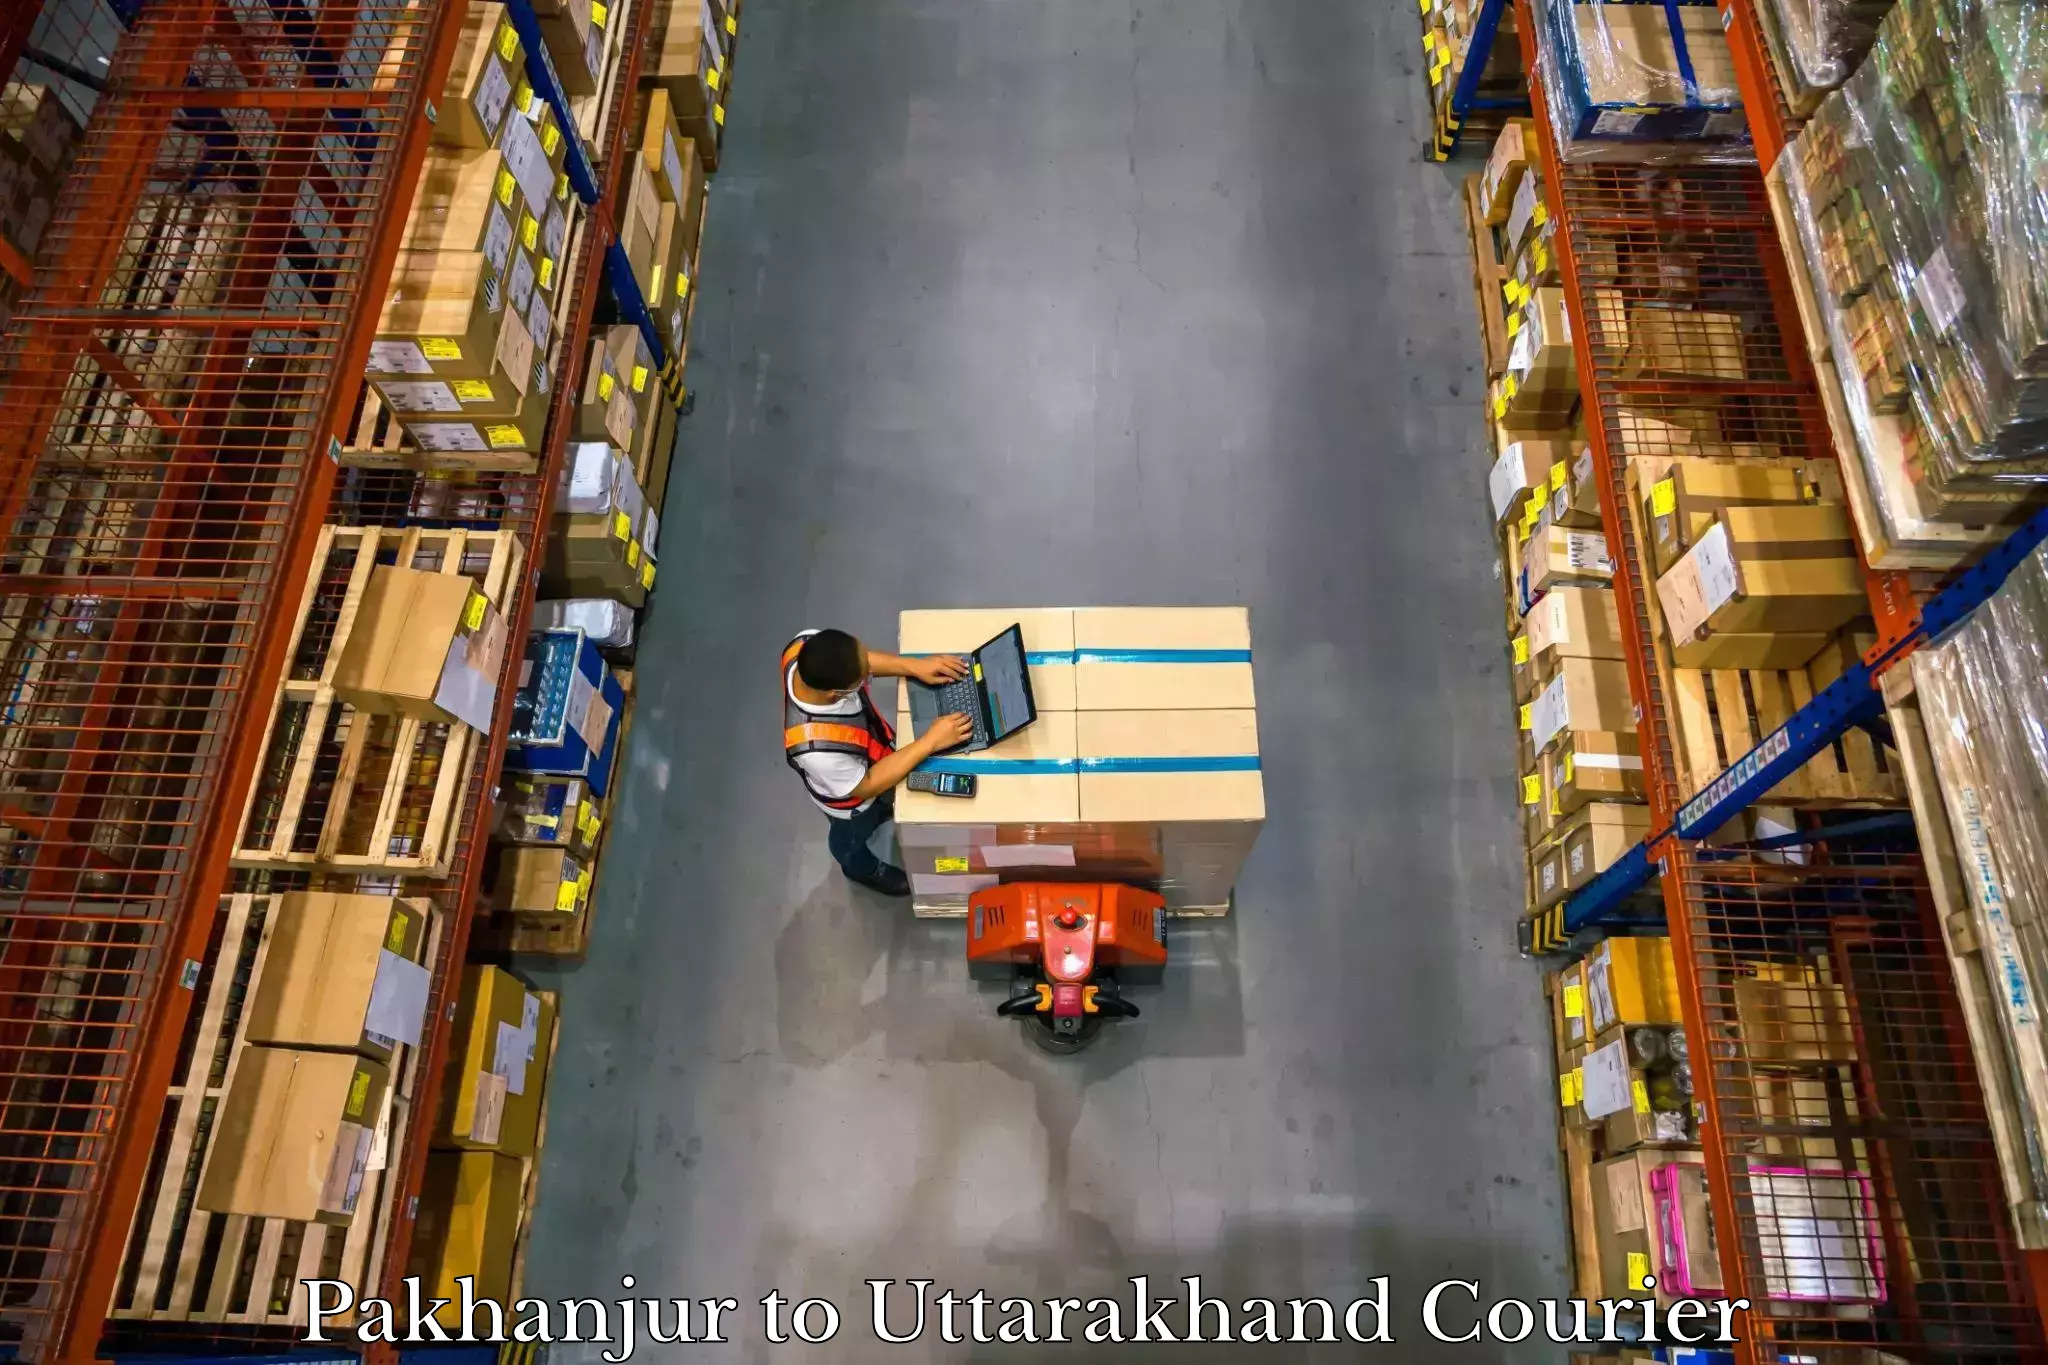 Luggage shipment tracking Pakhanjur to Rudrapur